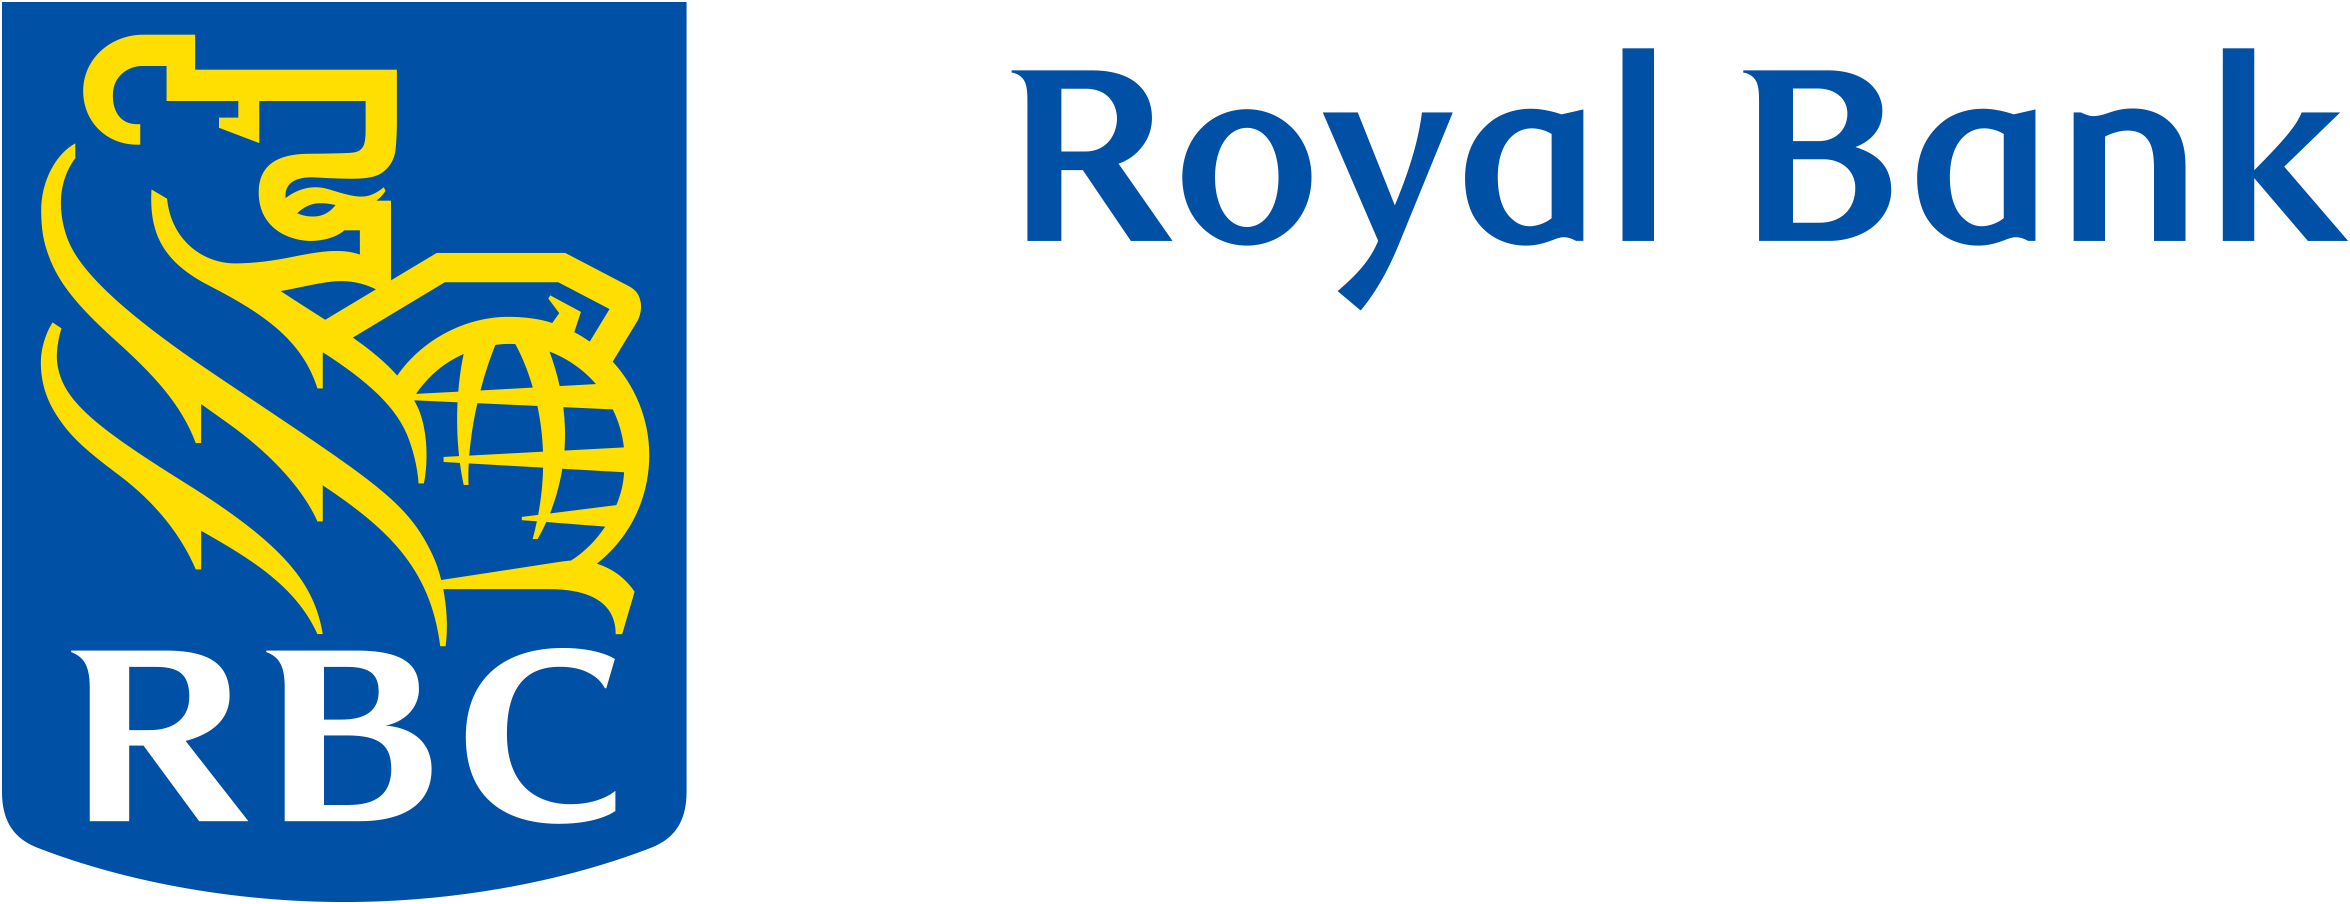 RBC Royal Bank logo.png